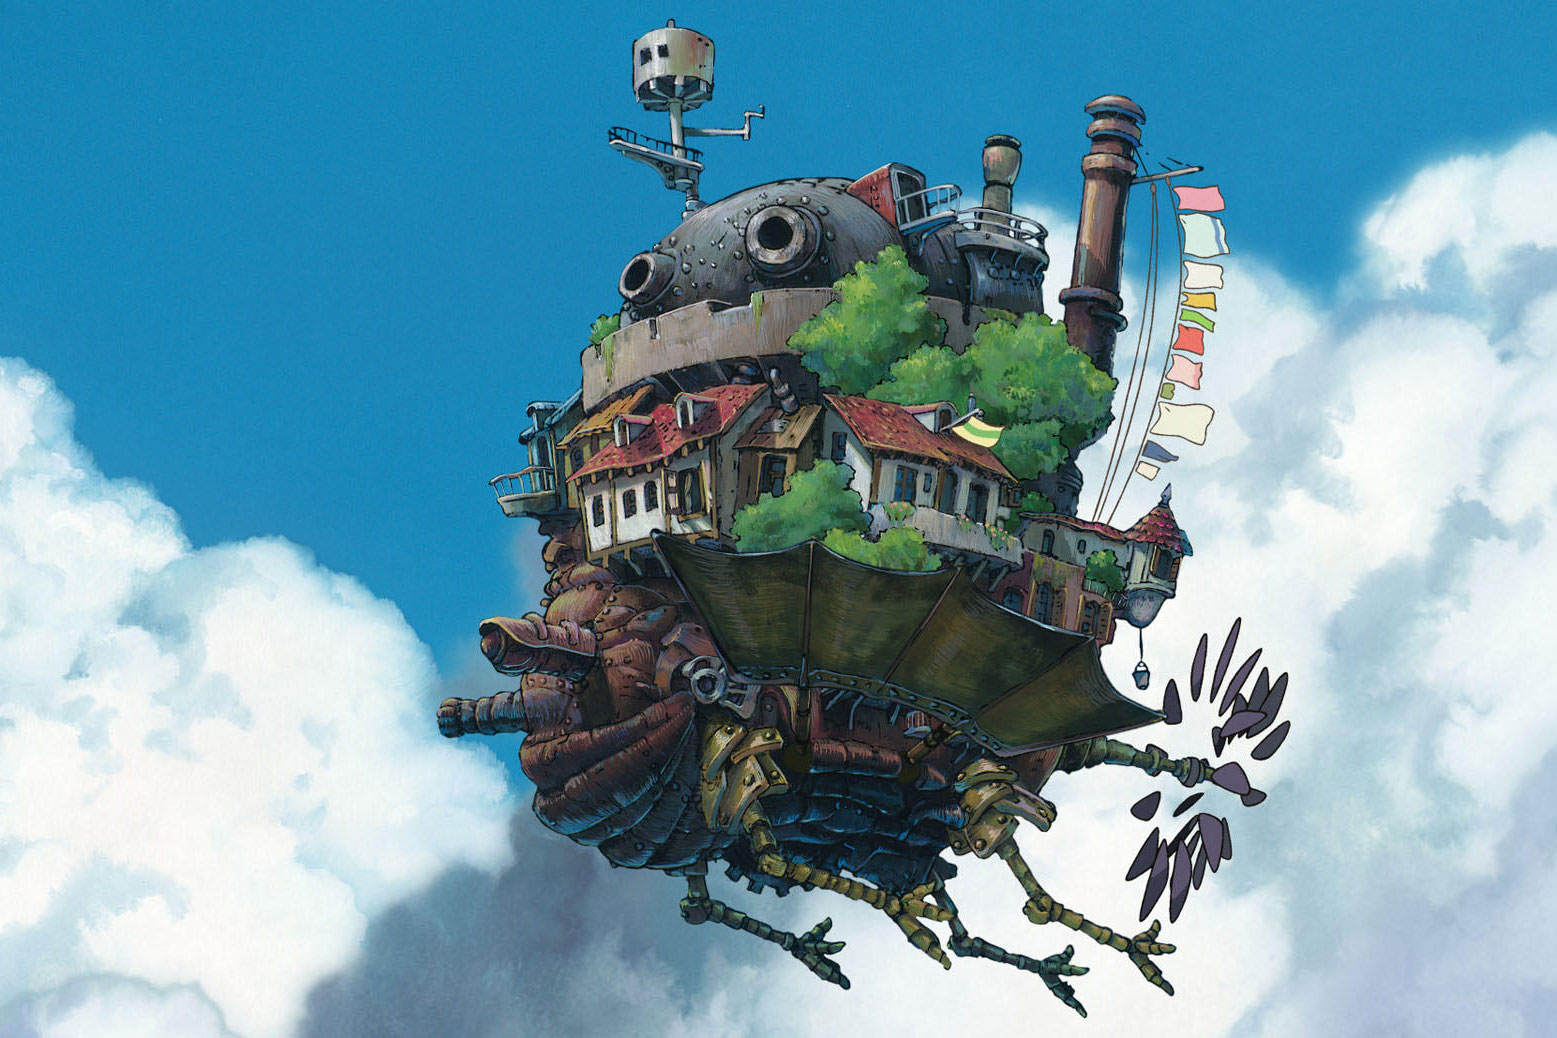 率先预览 Studio Ghibli 吉卜力工作室主题公园「霍尔的移动城堡」设施